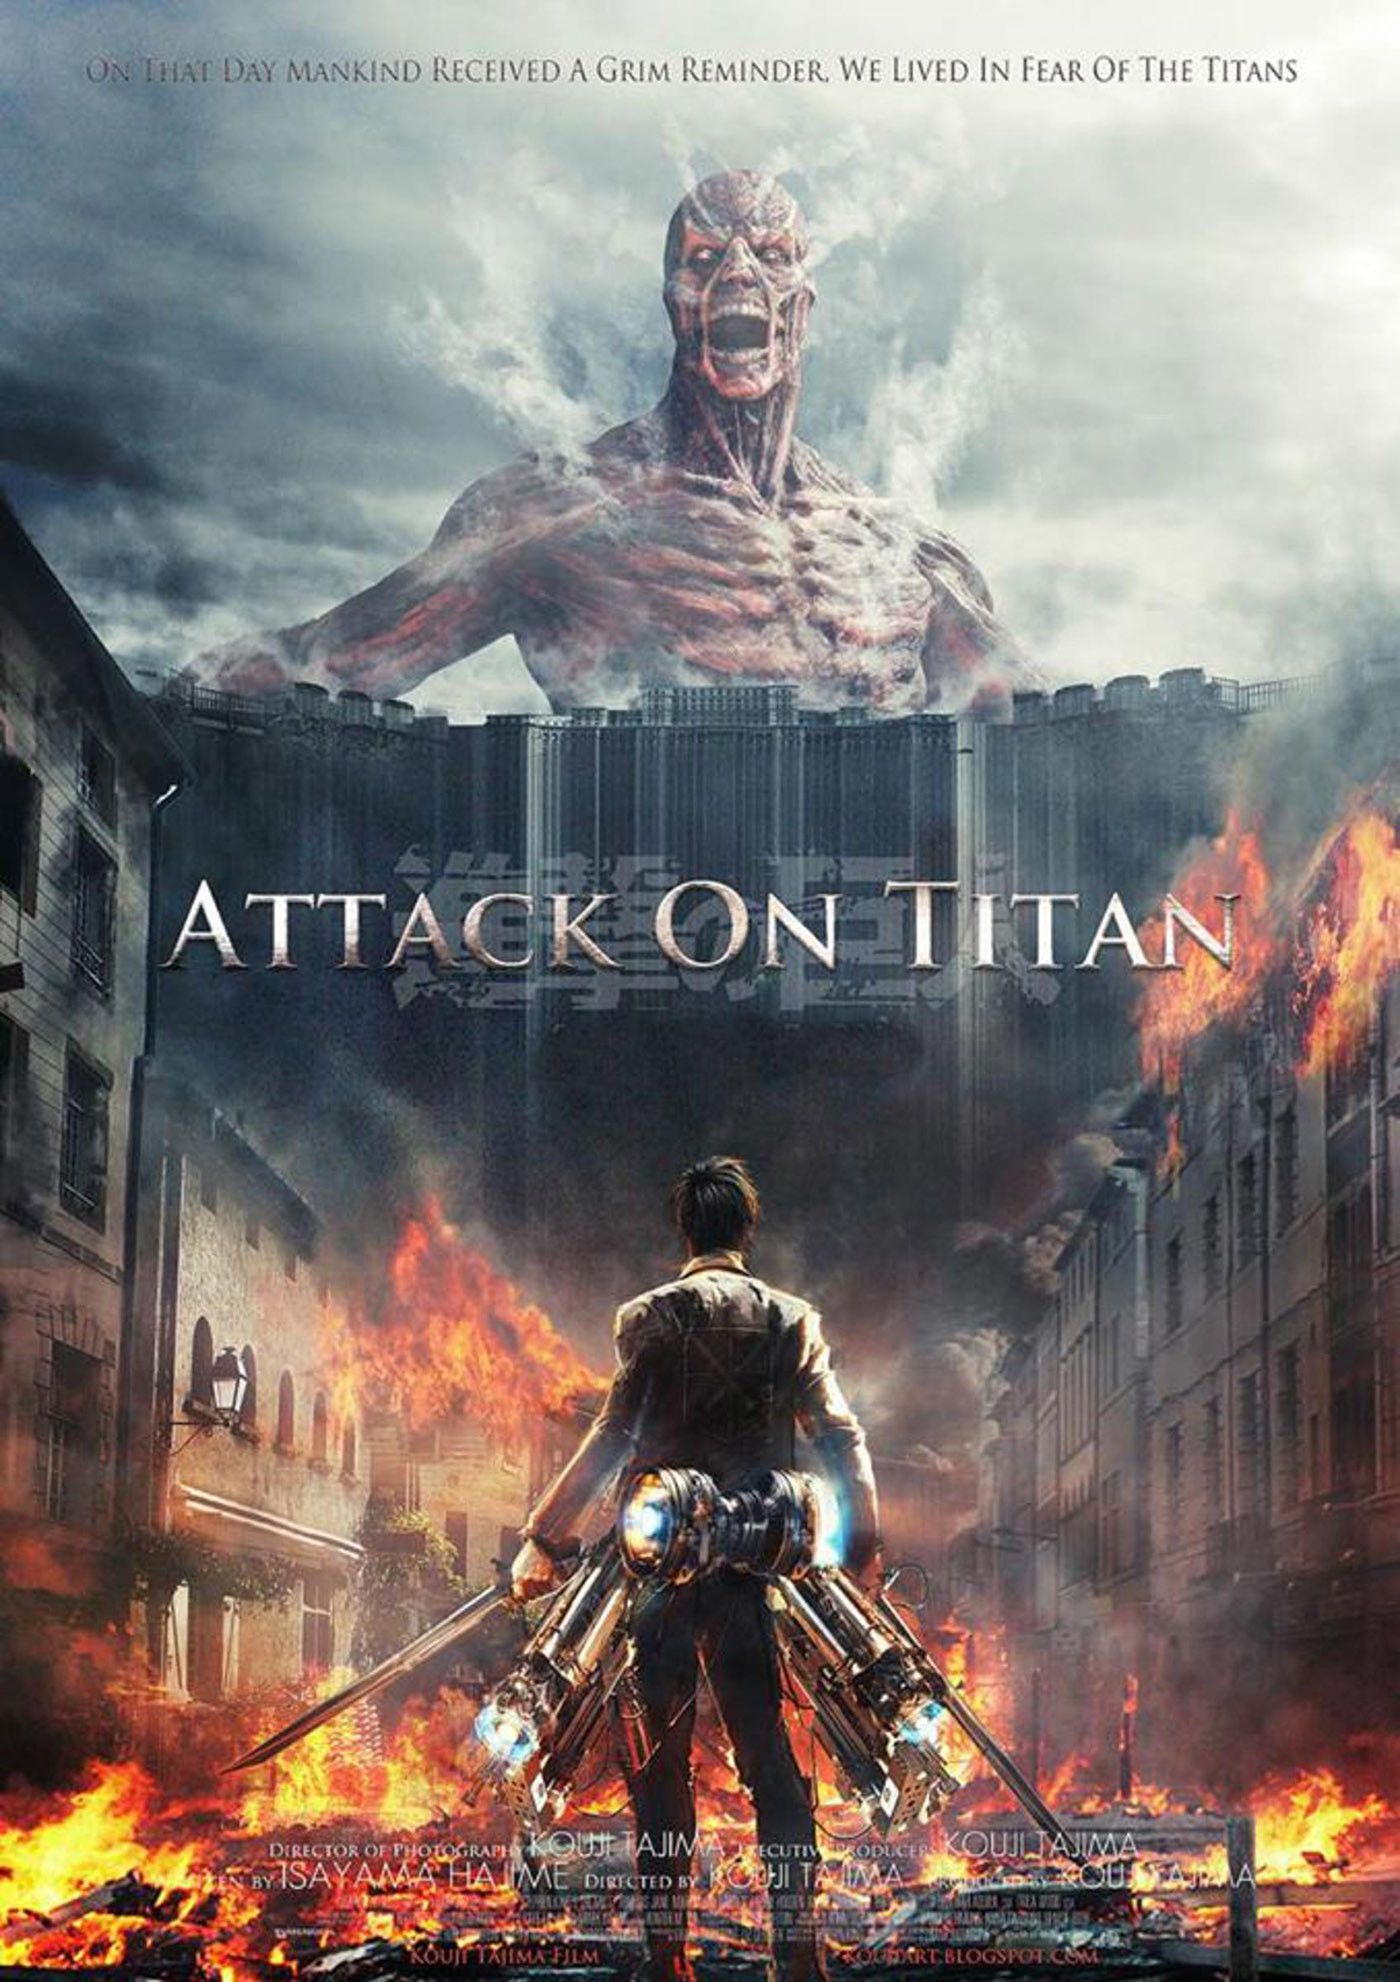 Attack on Titan Live Wallpaper. Attack on titan, Attack on titan anime, Titans anime